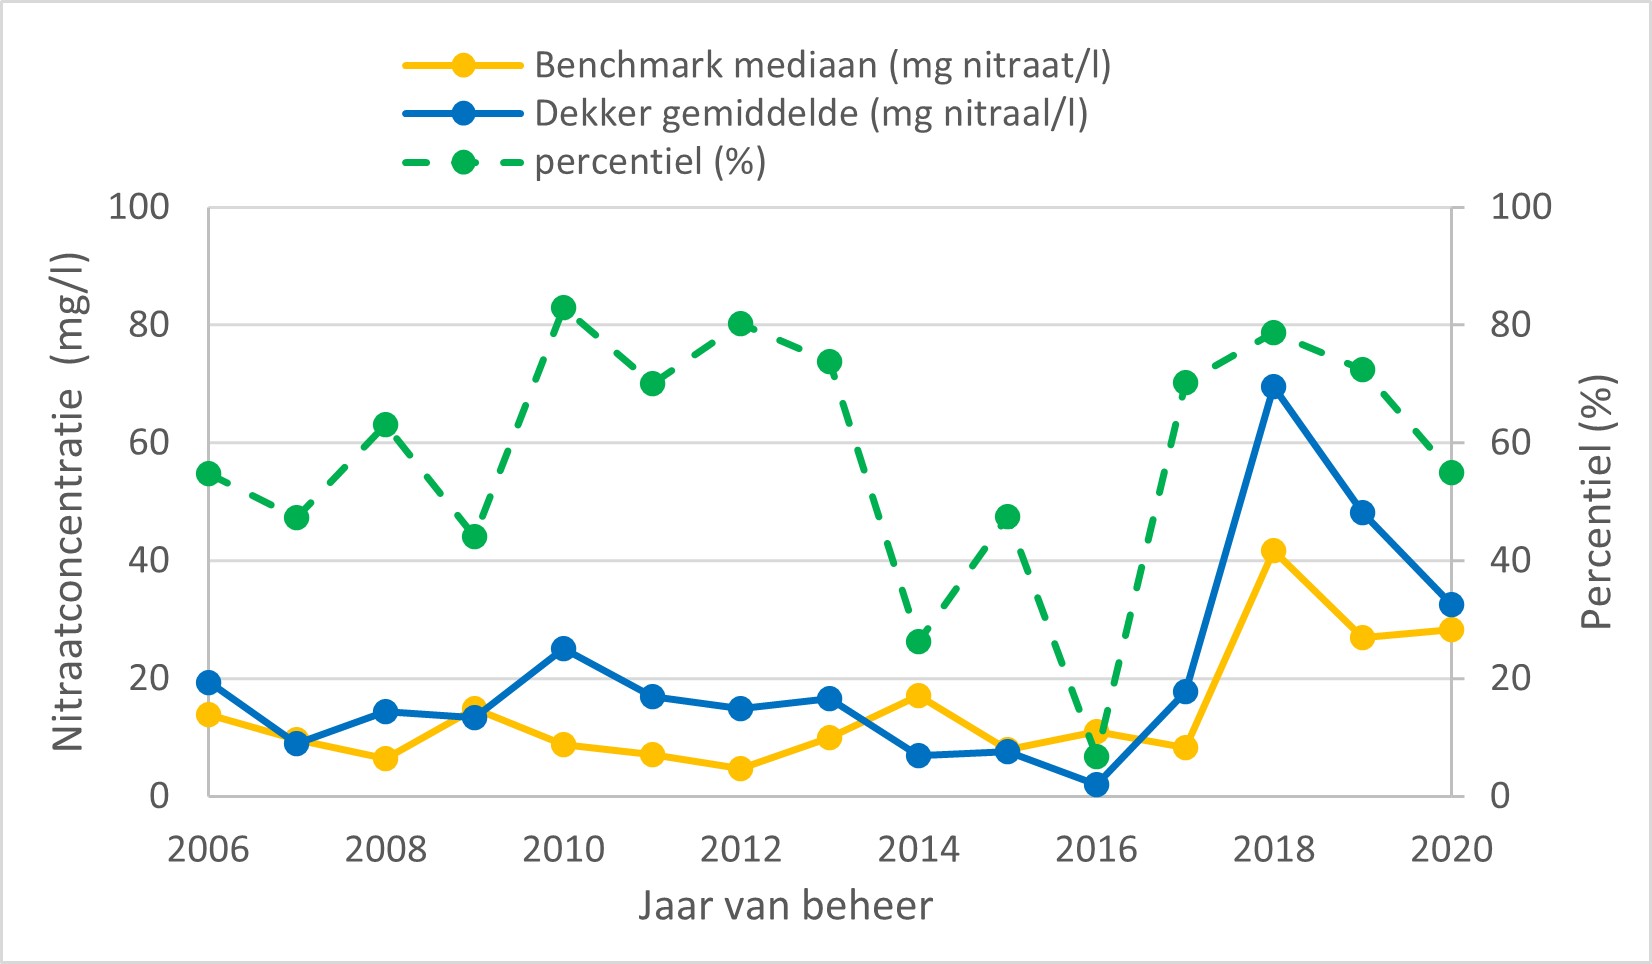 Grafiek met ontwikkeling nitraatconcentratie bedrijf Dekker en benchmark